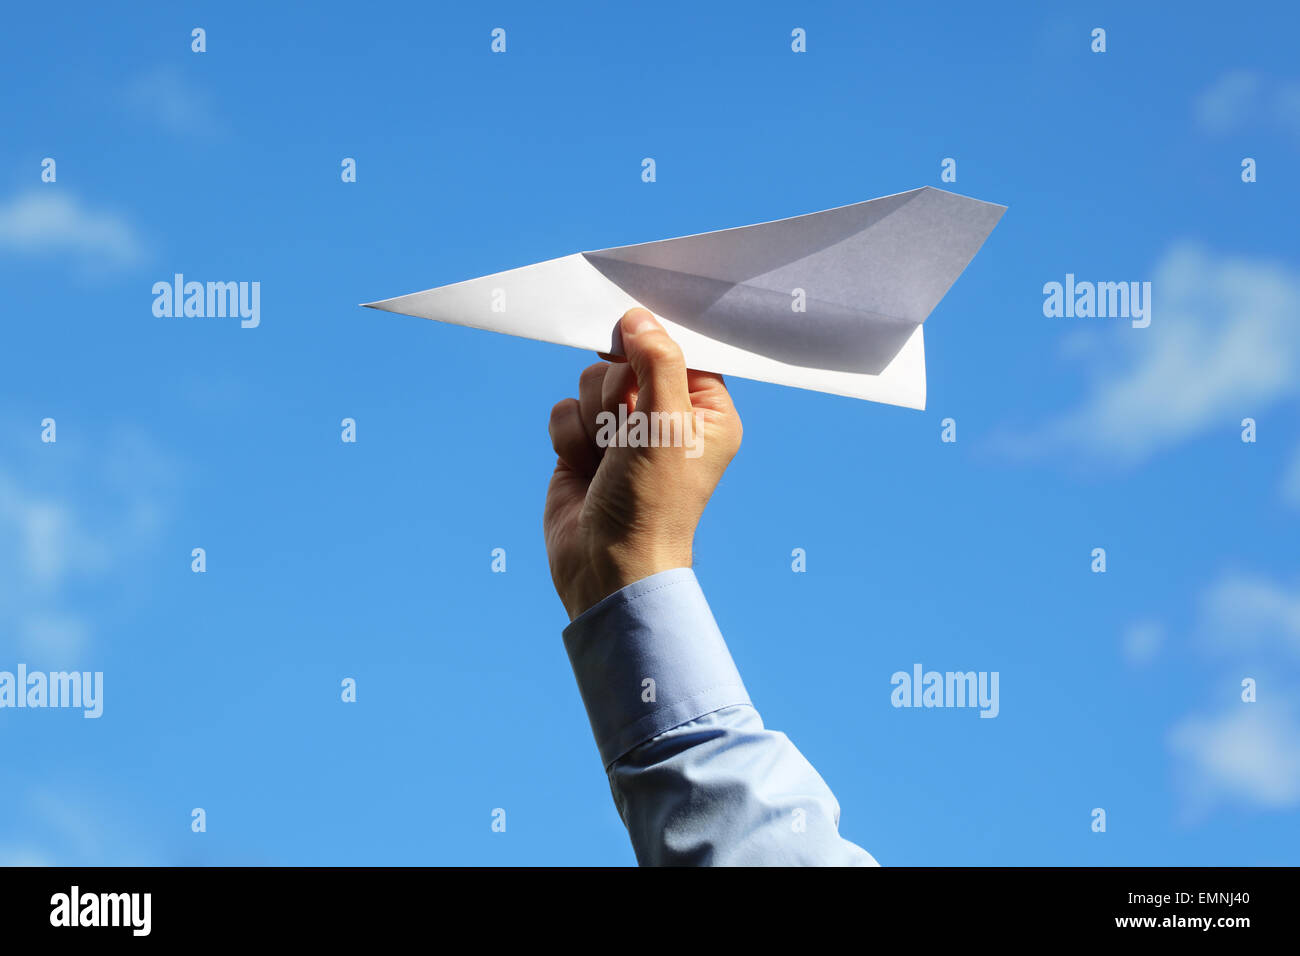 Imprenditore lanciando un aeroplano di carta concept per il business di avvio, imprenditore, creatività e libertà Foto Stock